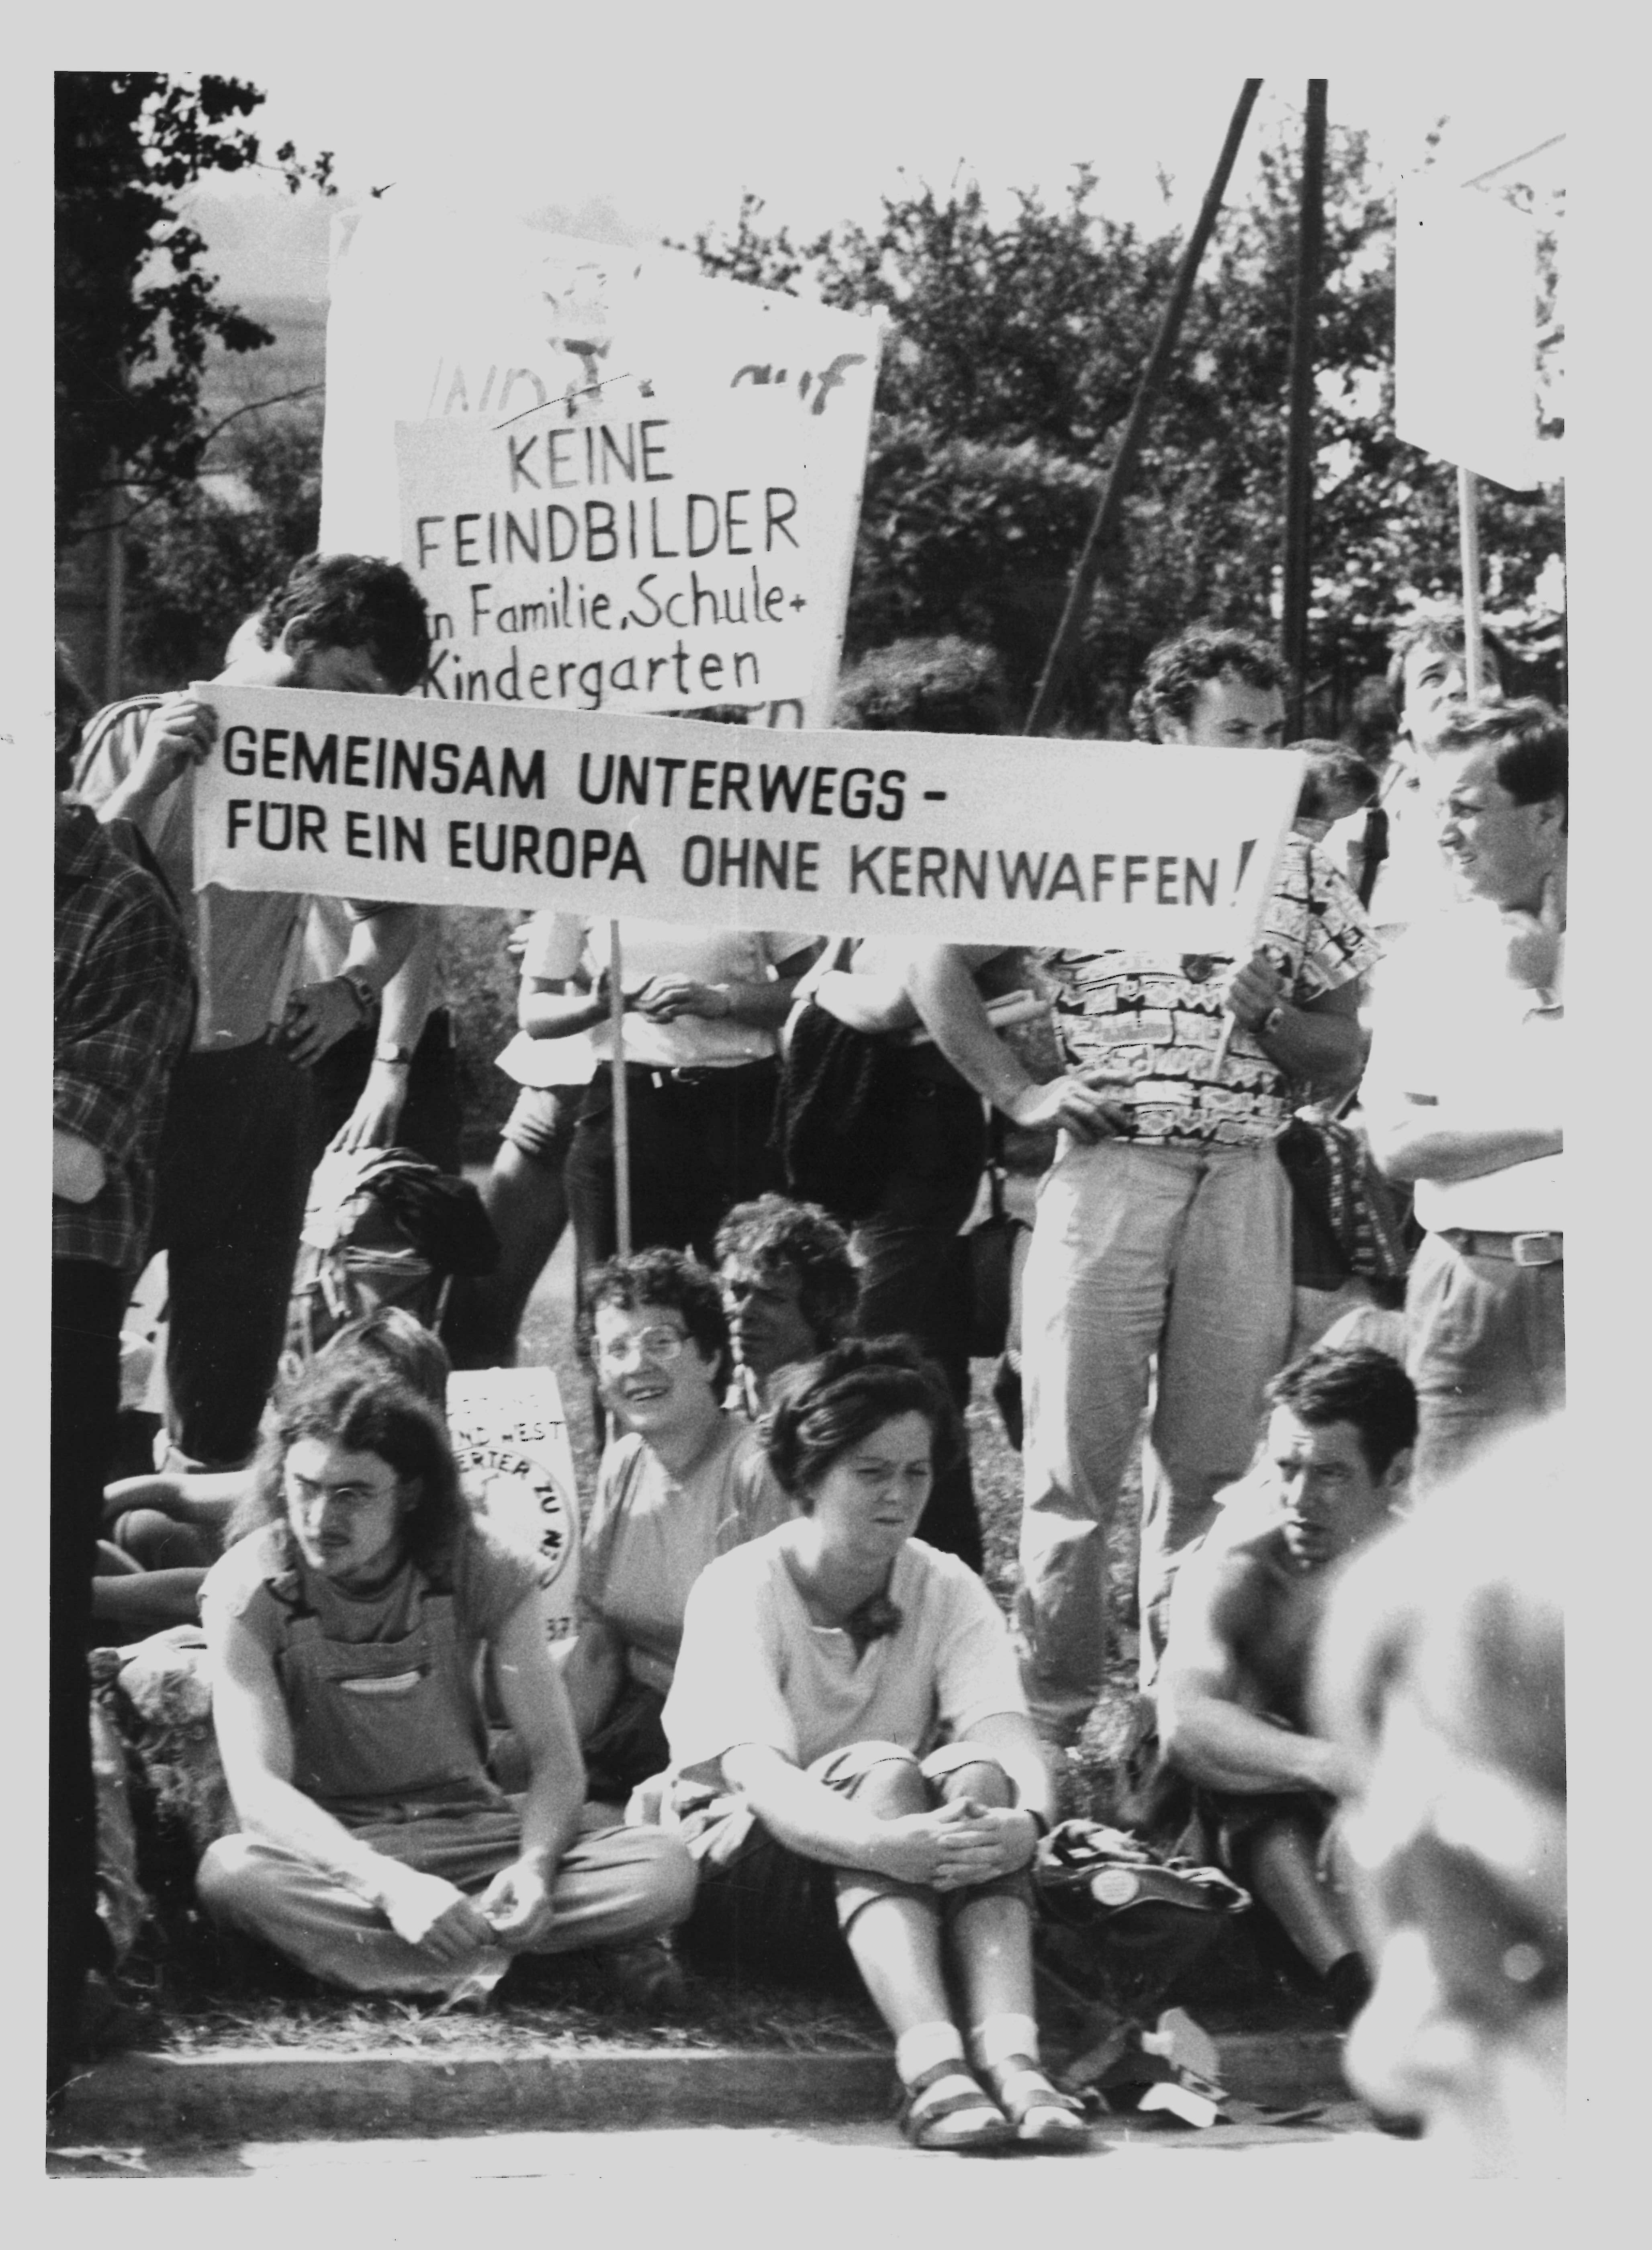 Olof-Palme-Marsch 1987: Teilnehmer mit Plakat: "Gemeinsam unterwegs - für ein Europa ohne Kernwaffen" (DDR Geschichtsmuseum im Dokumentationszentrum Perleberg CC BY-SA)